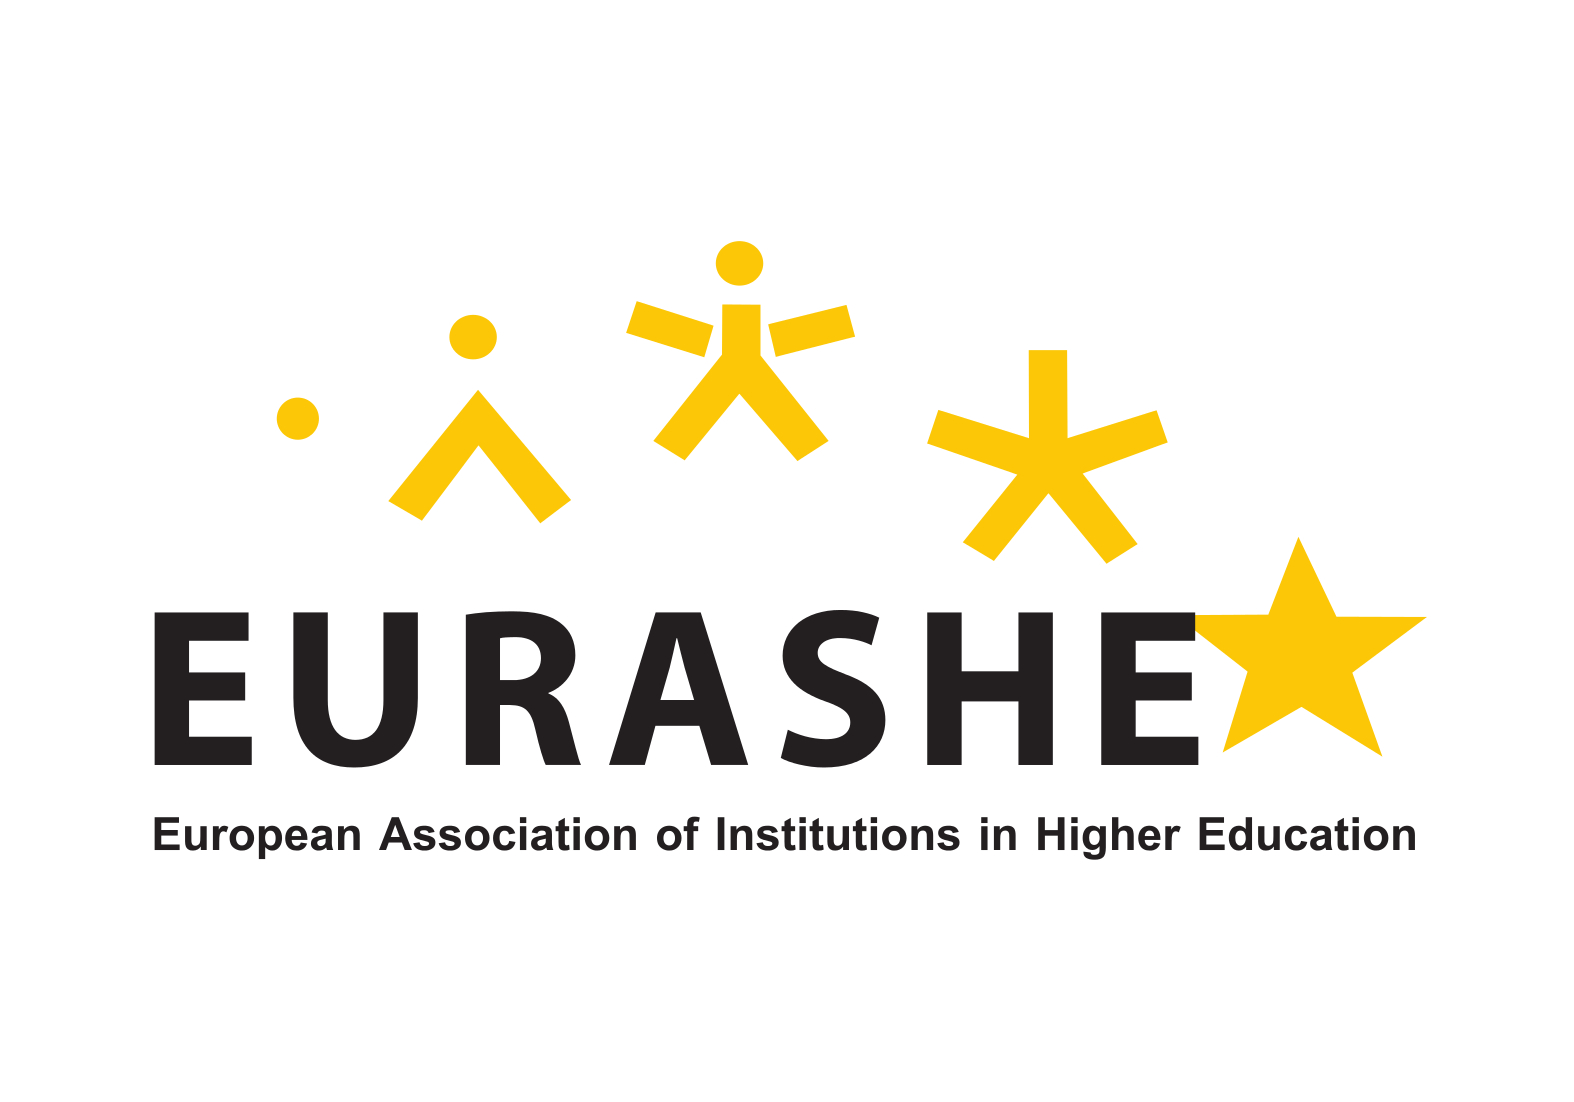 Logo EURASHE